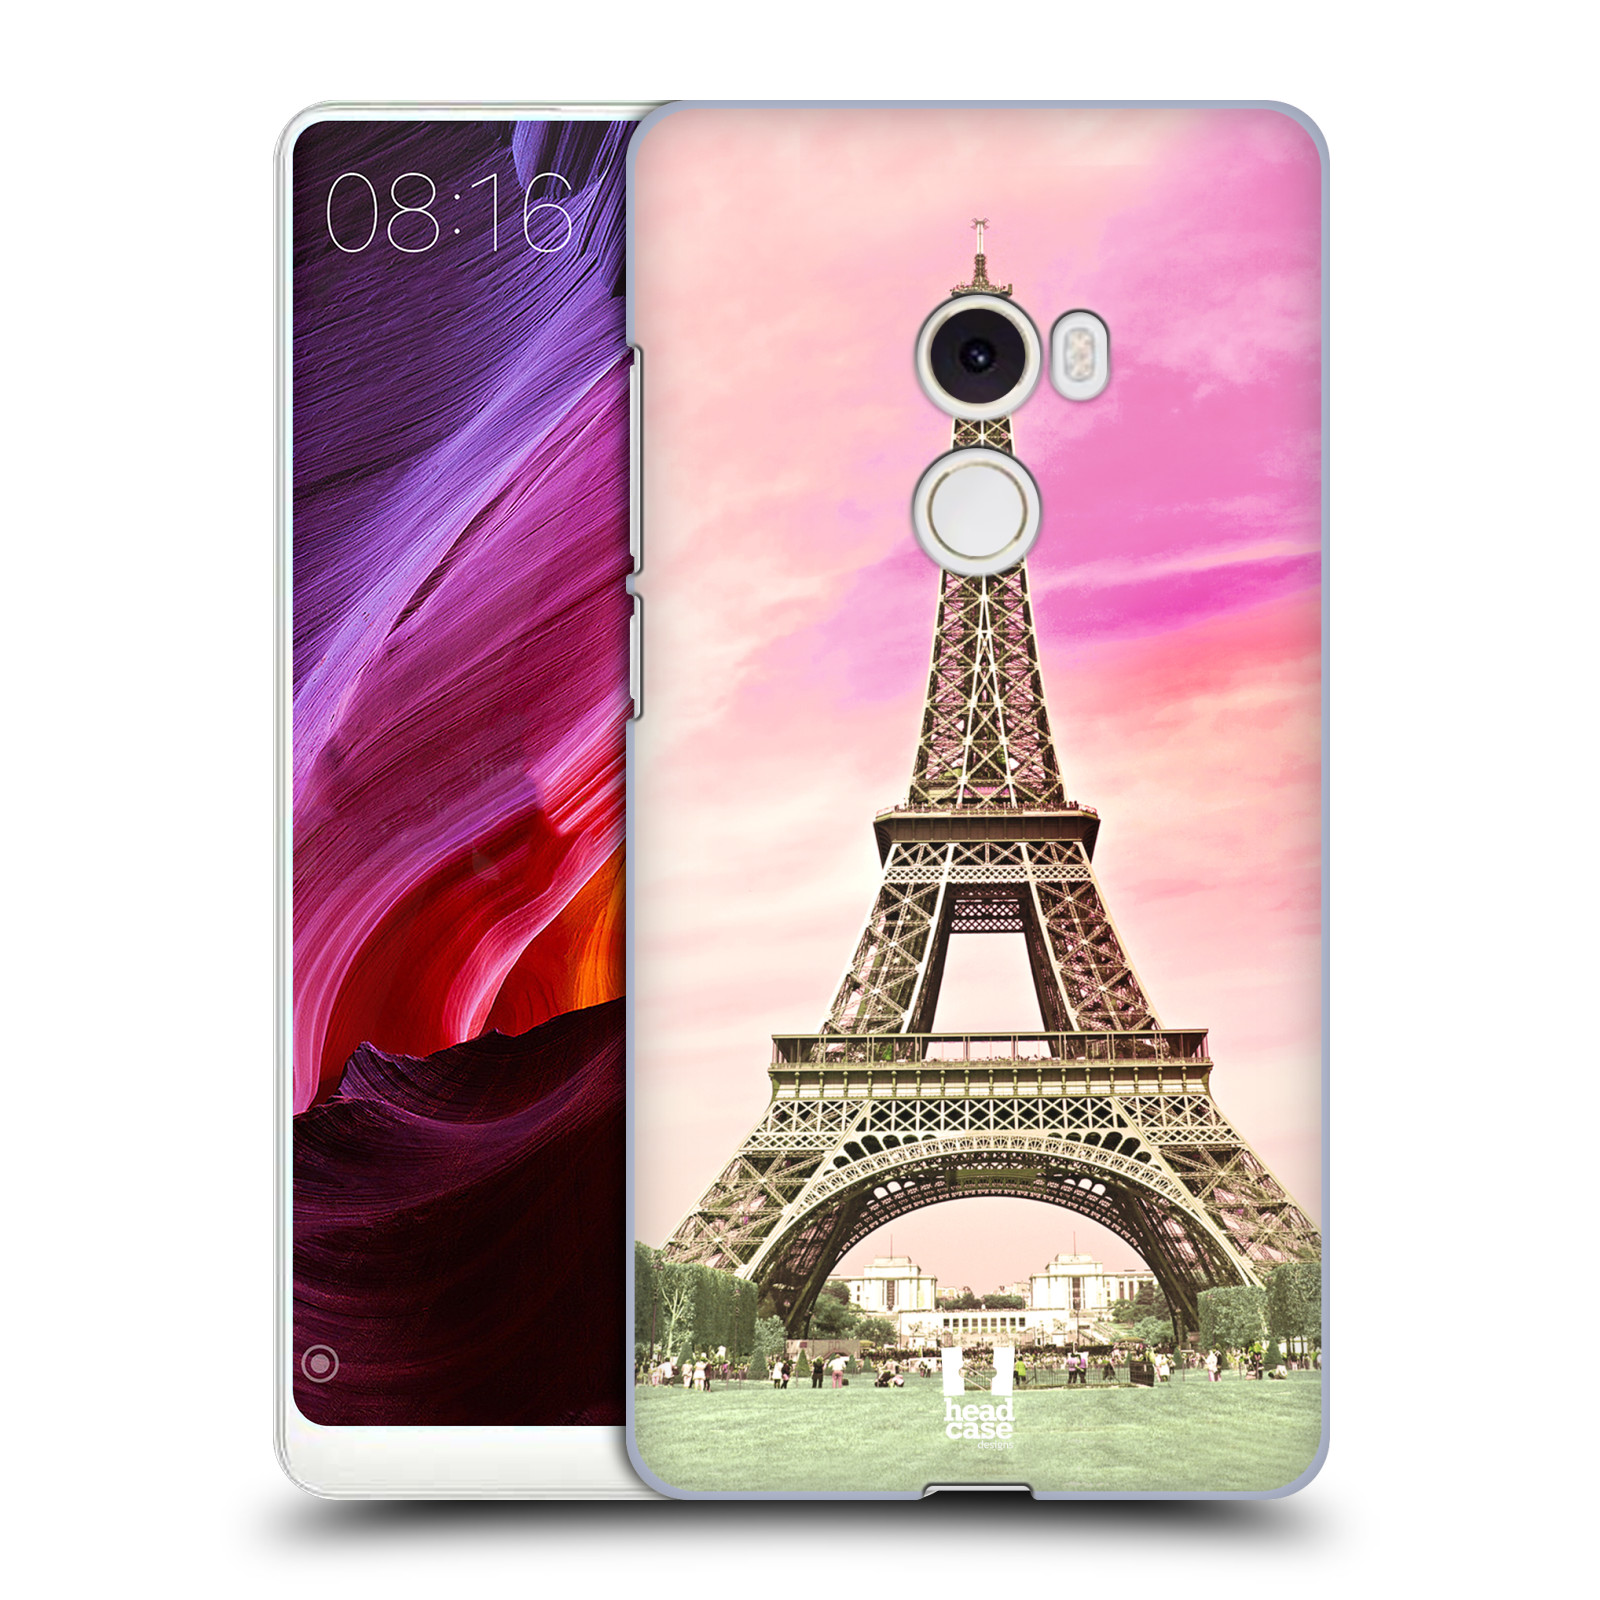 Pouzdro na mobil Xiaomi Mi Mix 2 - HEAD CASE - historická místa Eiffelova věž Paříž